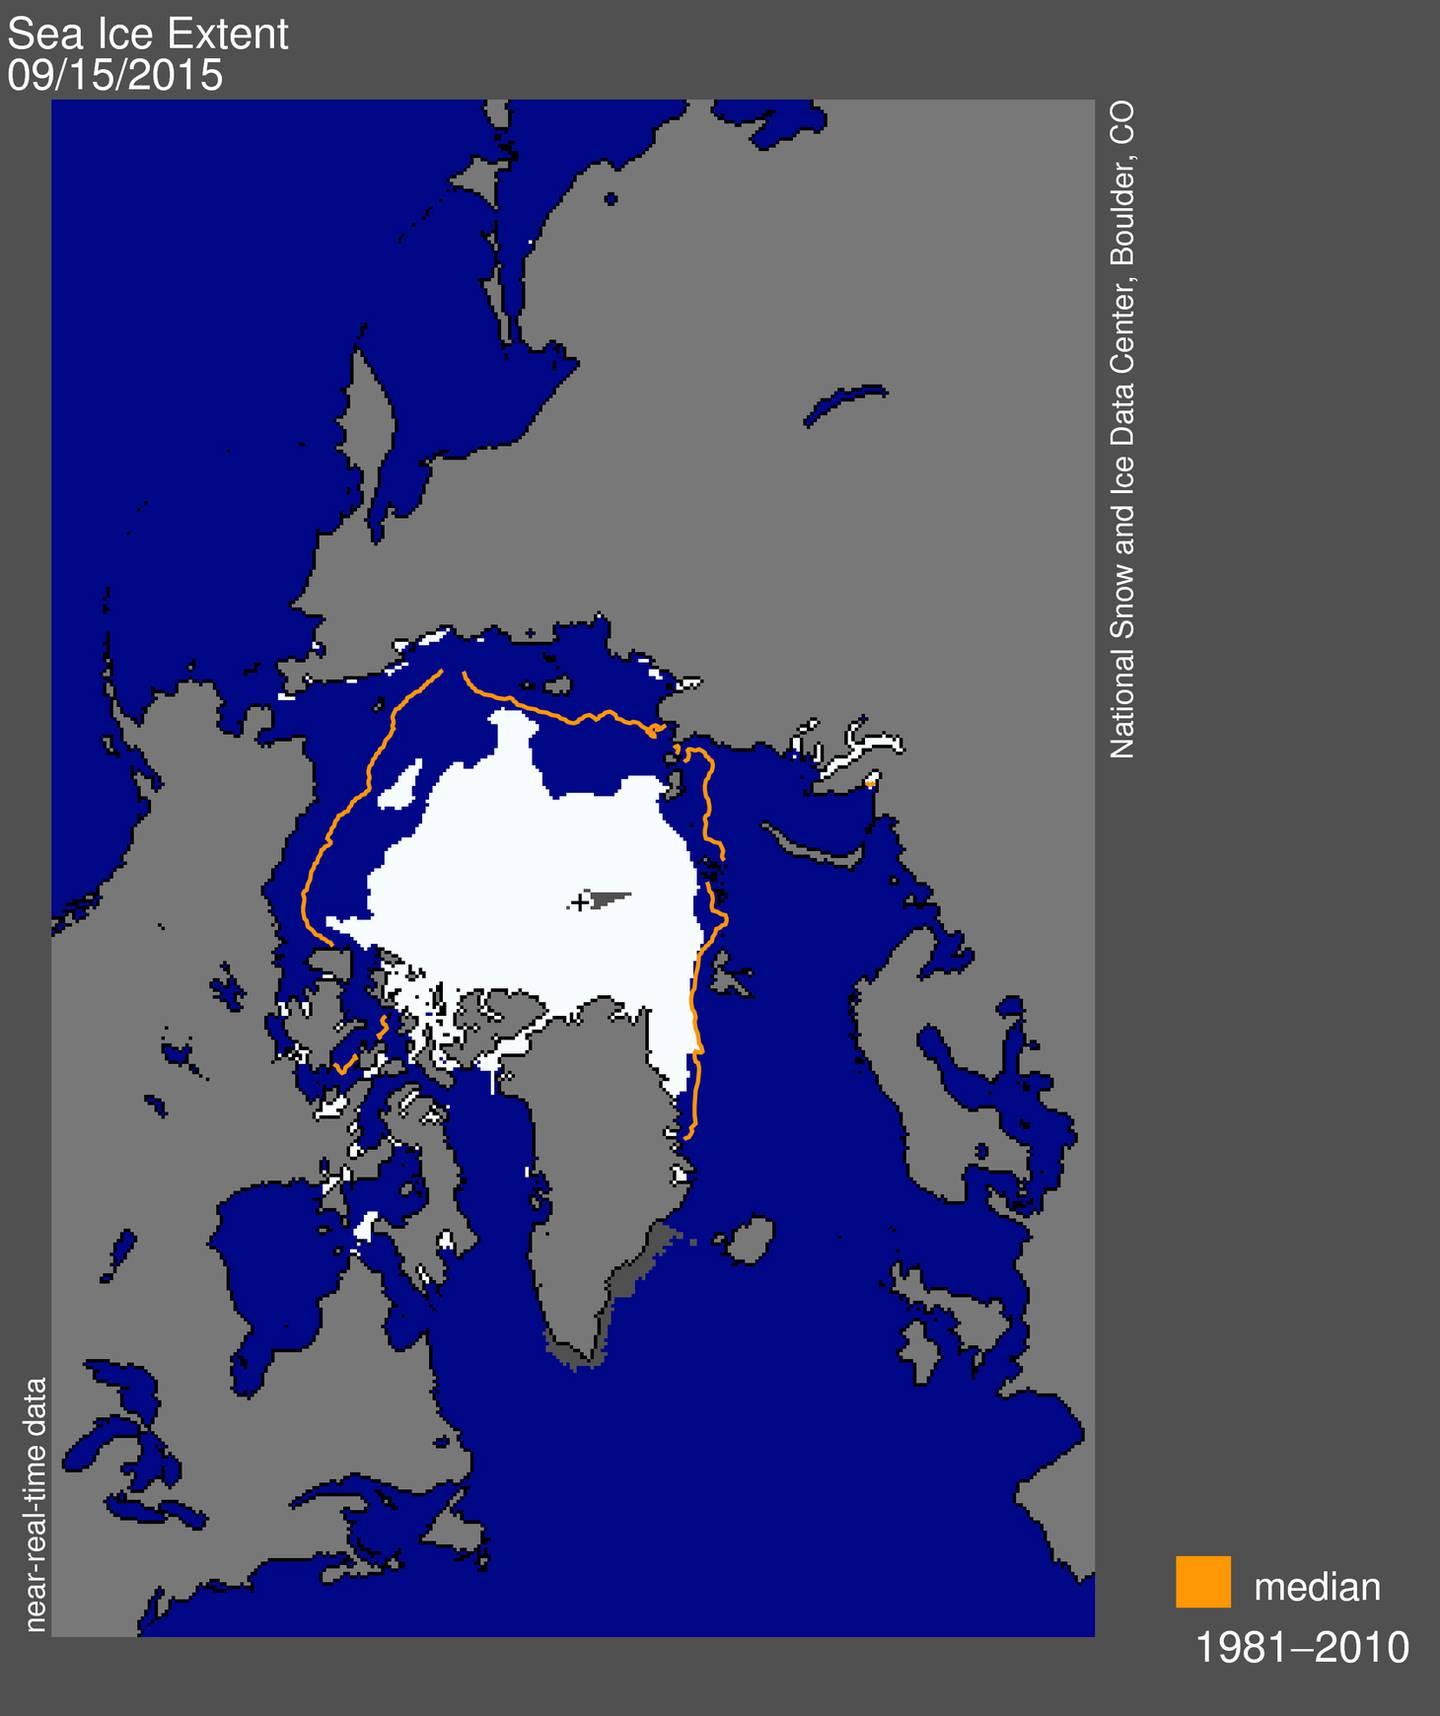 Kartet over Polhavet viser hvor stort område som var dekket av is da sommersmeltingen 2015 stanset. Den røde streken viser gjennomsnittlig isdekke på samme tidspunkt for årene 1980-2010.